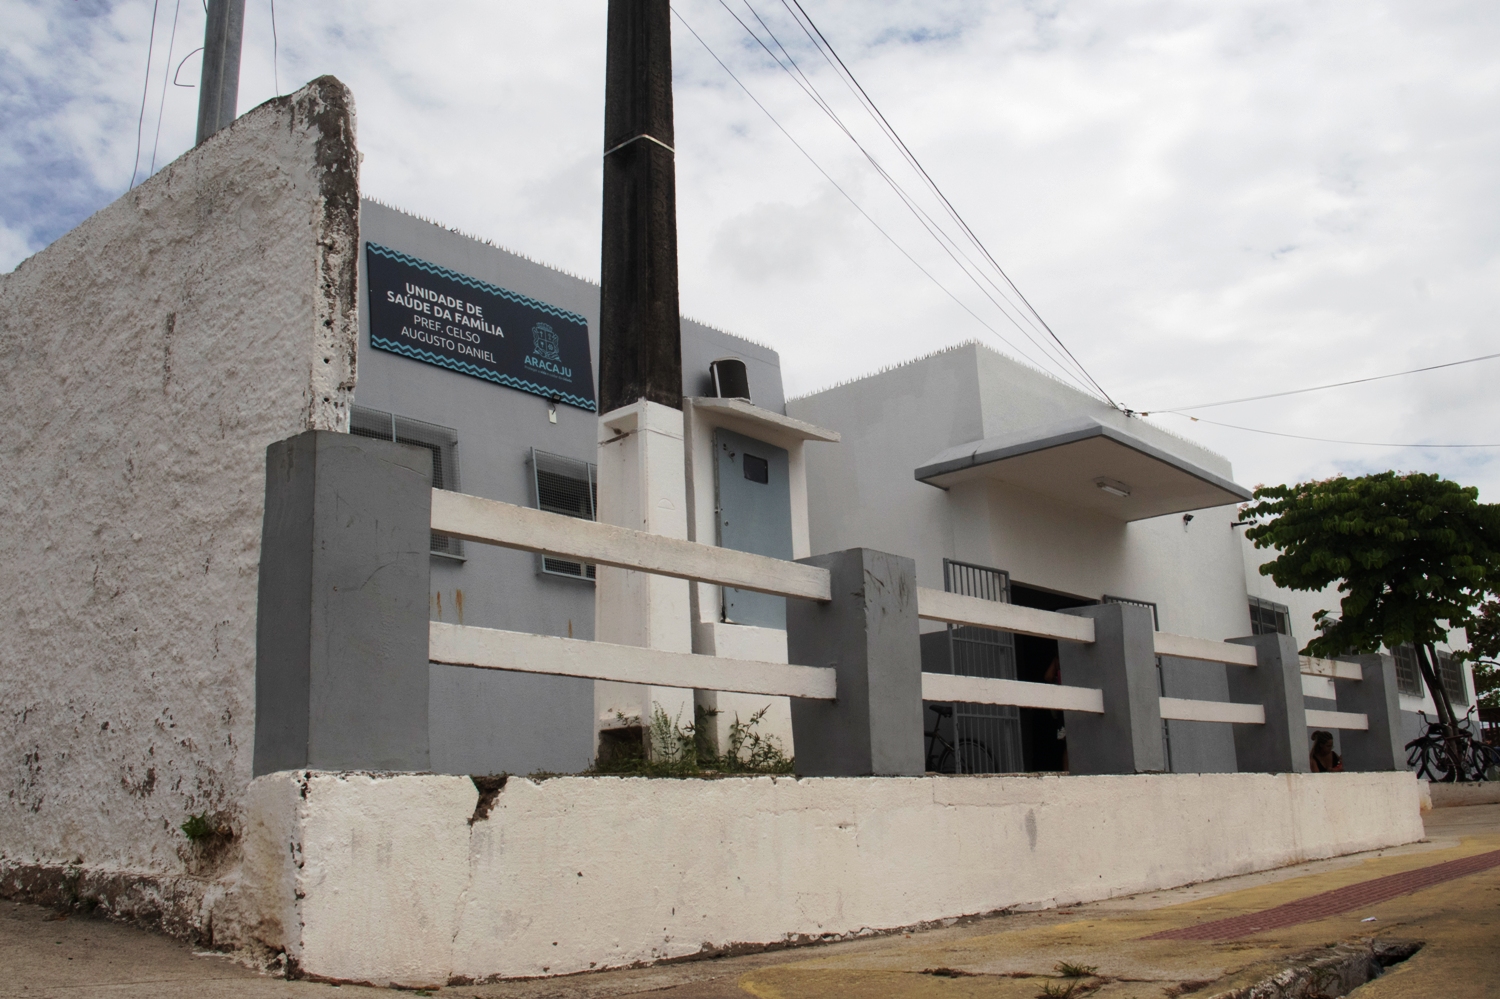 Três unidades básicas de saúde em Aracaju foram selecionadas no projeto. Foto: Josafá Neto/Rádio UFS